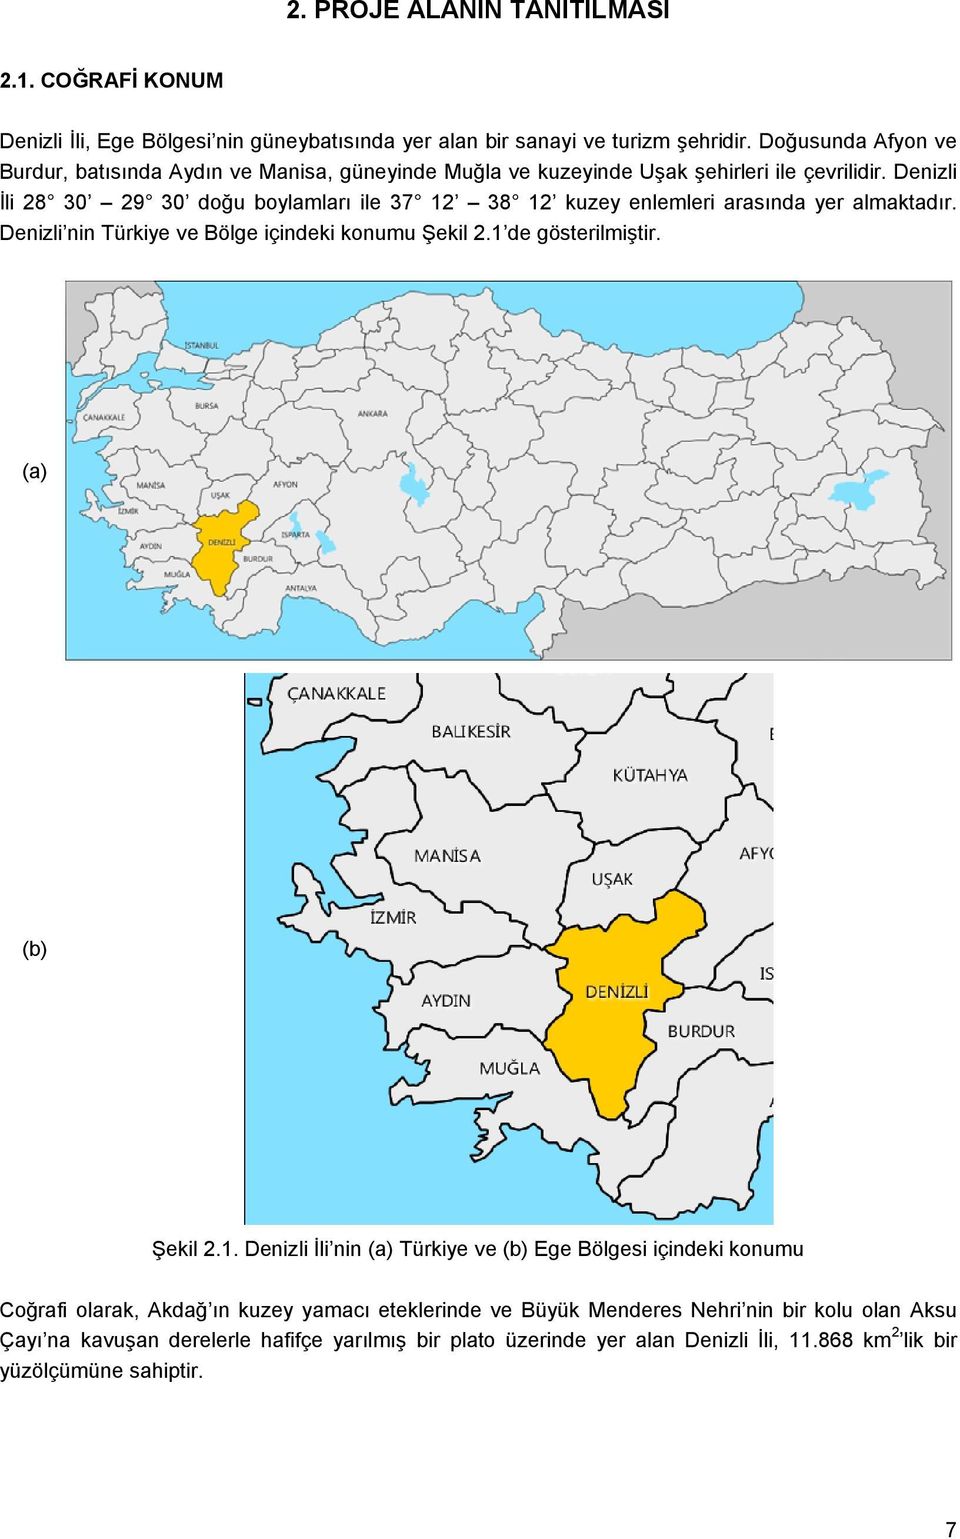 Denizli İli 28 30 29 30 doğu boylamları ile 37 12 38 12 kuzey enlemleri arasında yer almaktadır. Denizli nin Türkiye ve Bölge içindeki konumu Şekil 2.1 de gösterilmiştir.